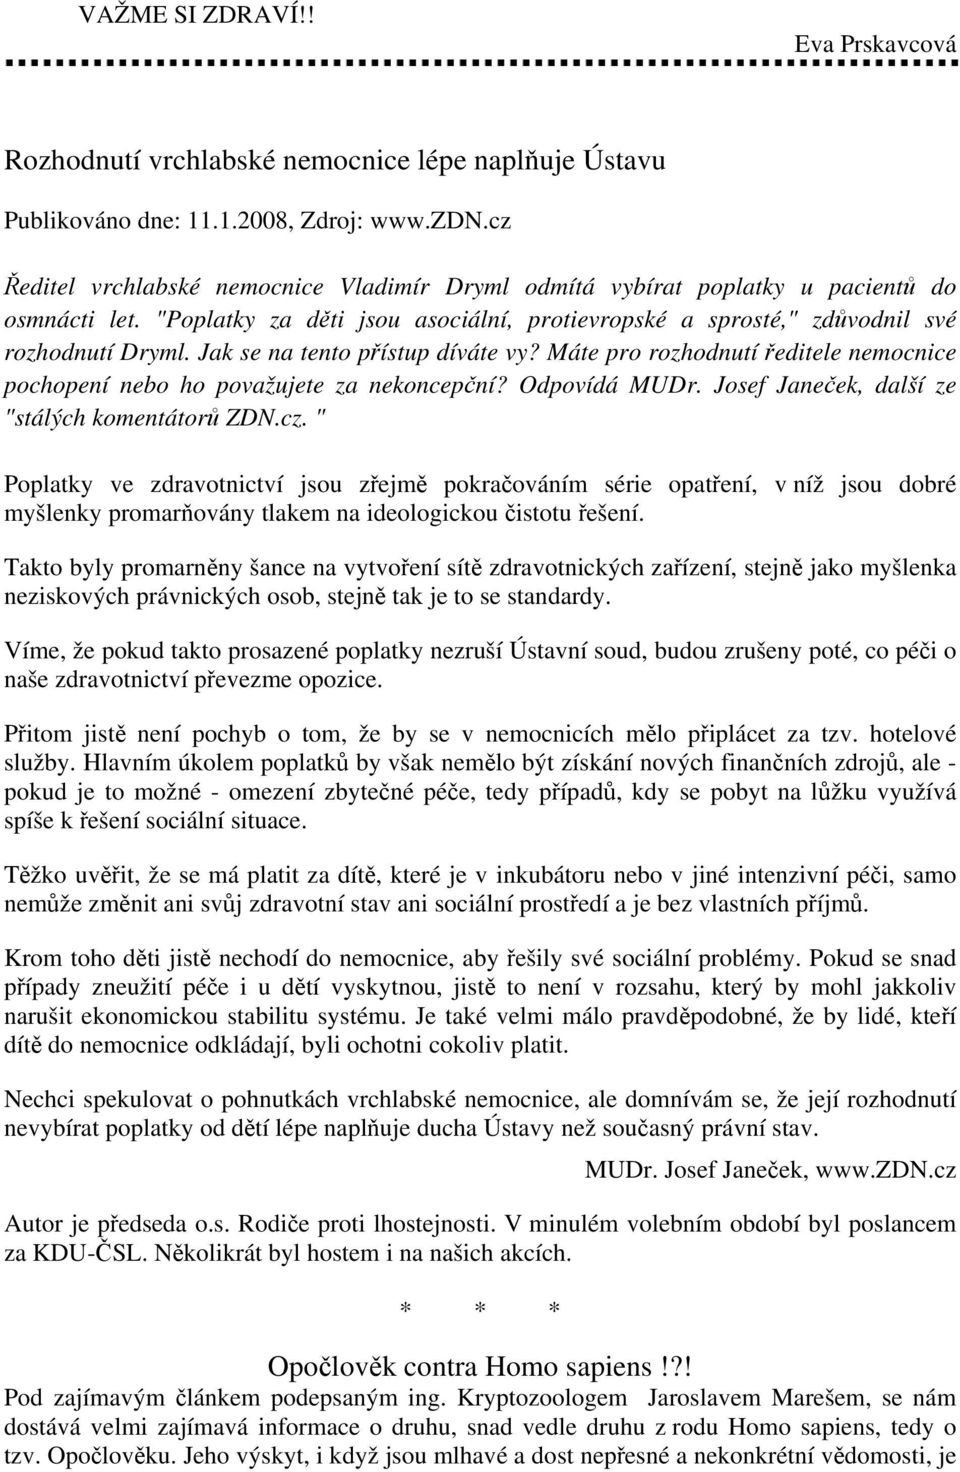 NAŠE TÉMA: REGULAČNÍ POPLATKY číslo druhé - únor ročník IX. (2008) - PDF  Free Download